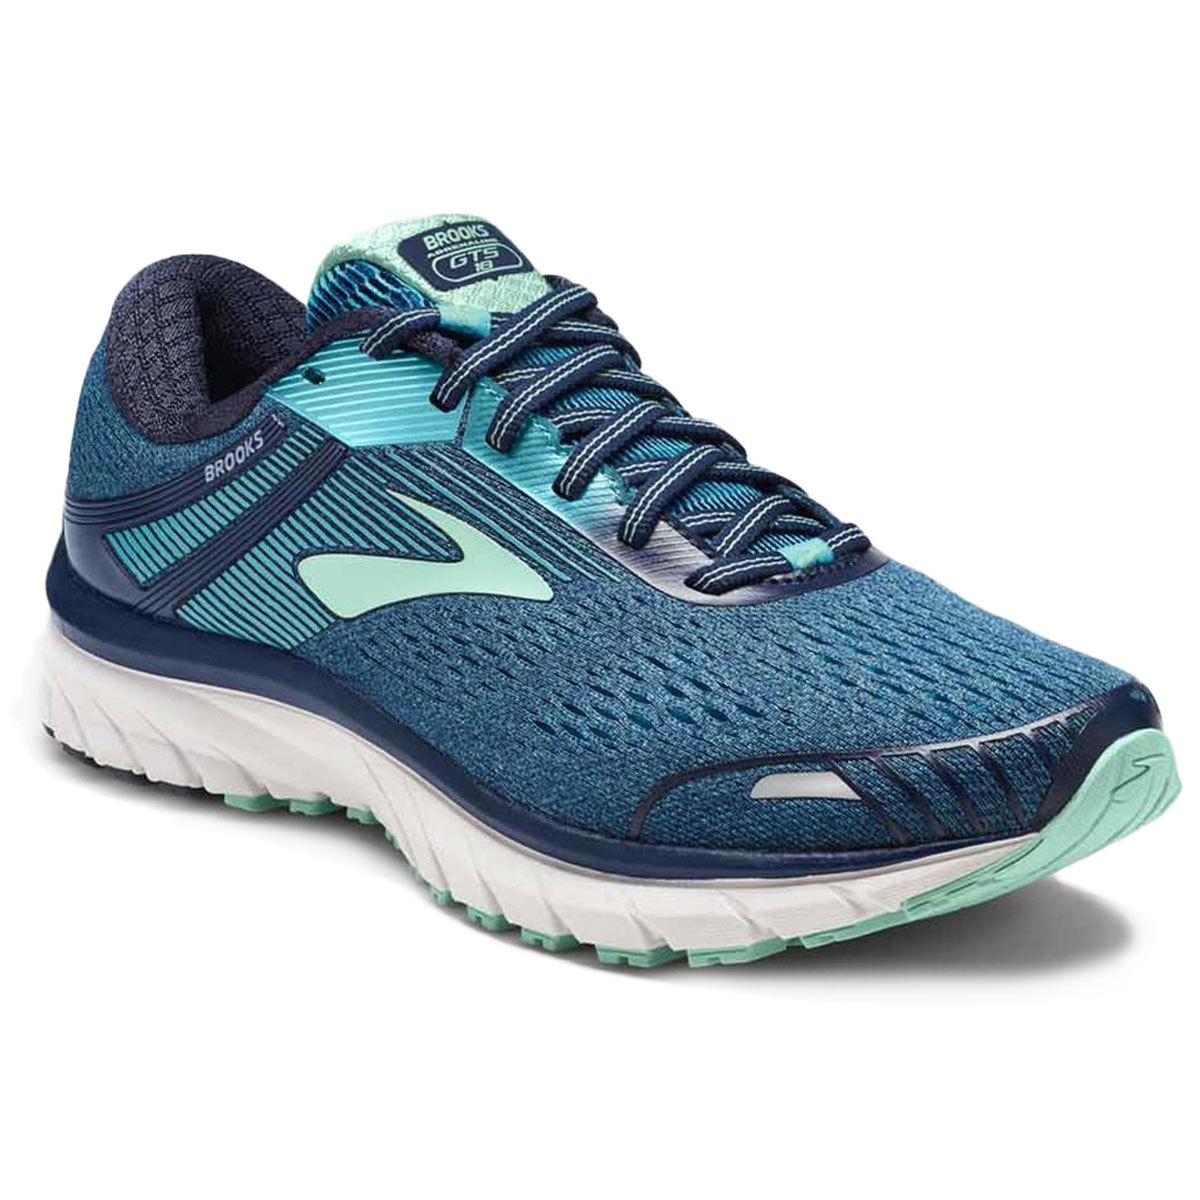 Brooks Women's Adrenaline Gts 18 Running Shoes - Blue, 6.5